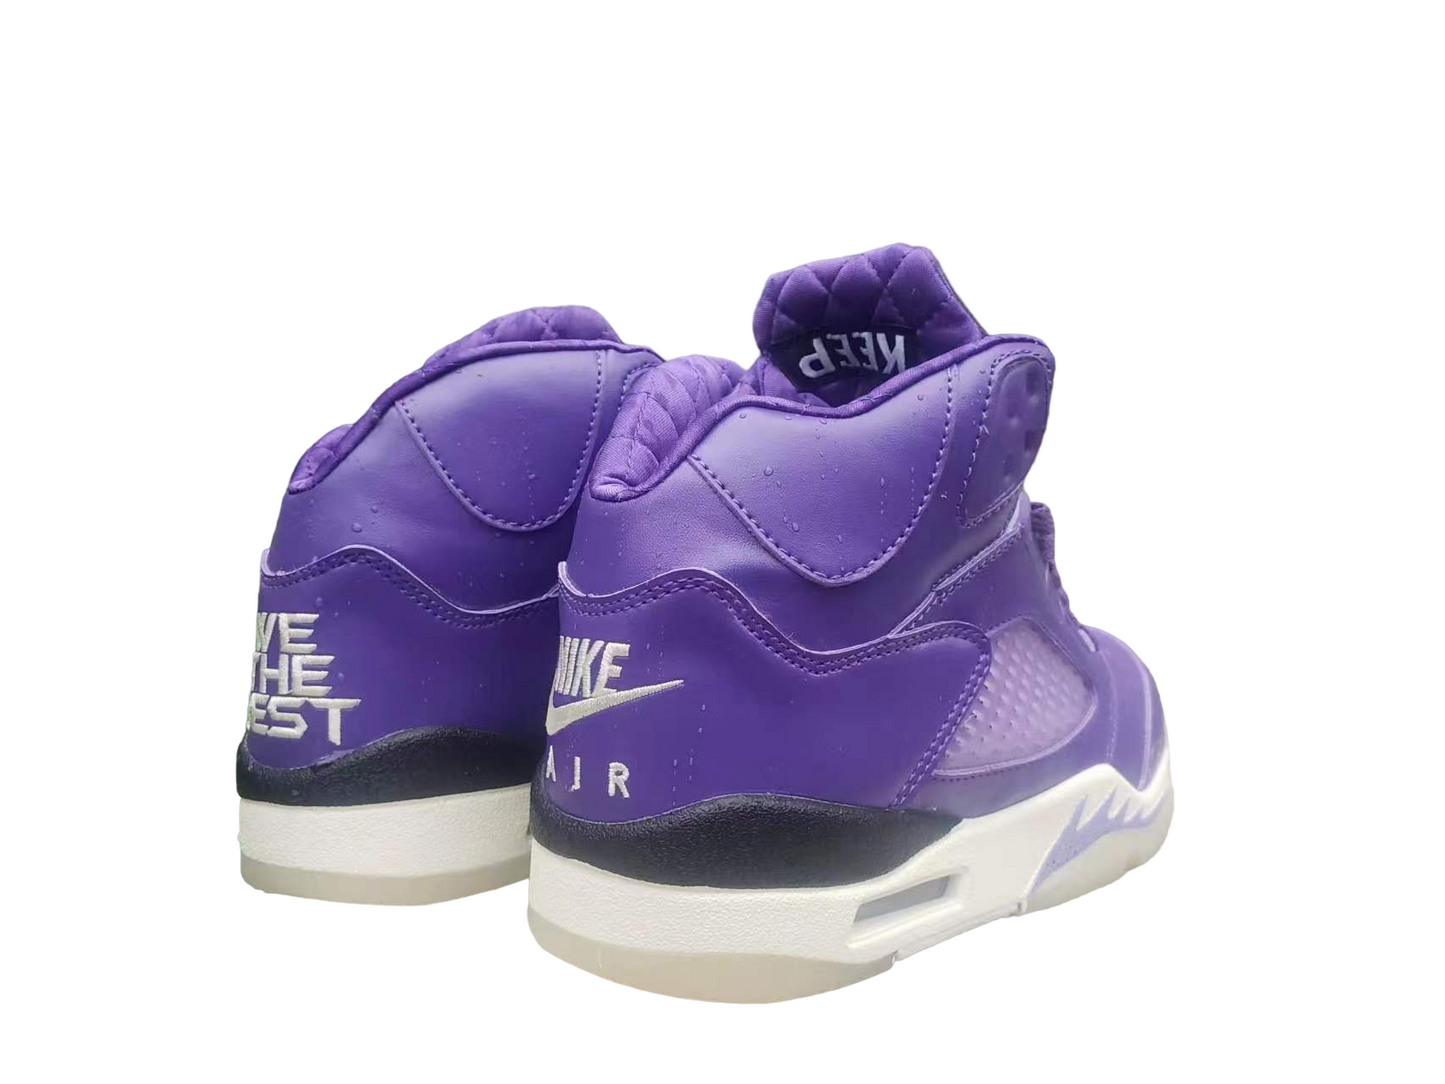 Air Jordan 5 Bright Purple